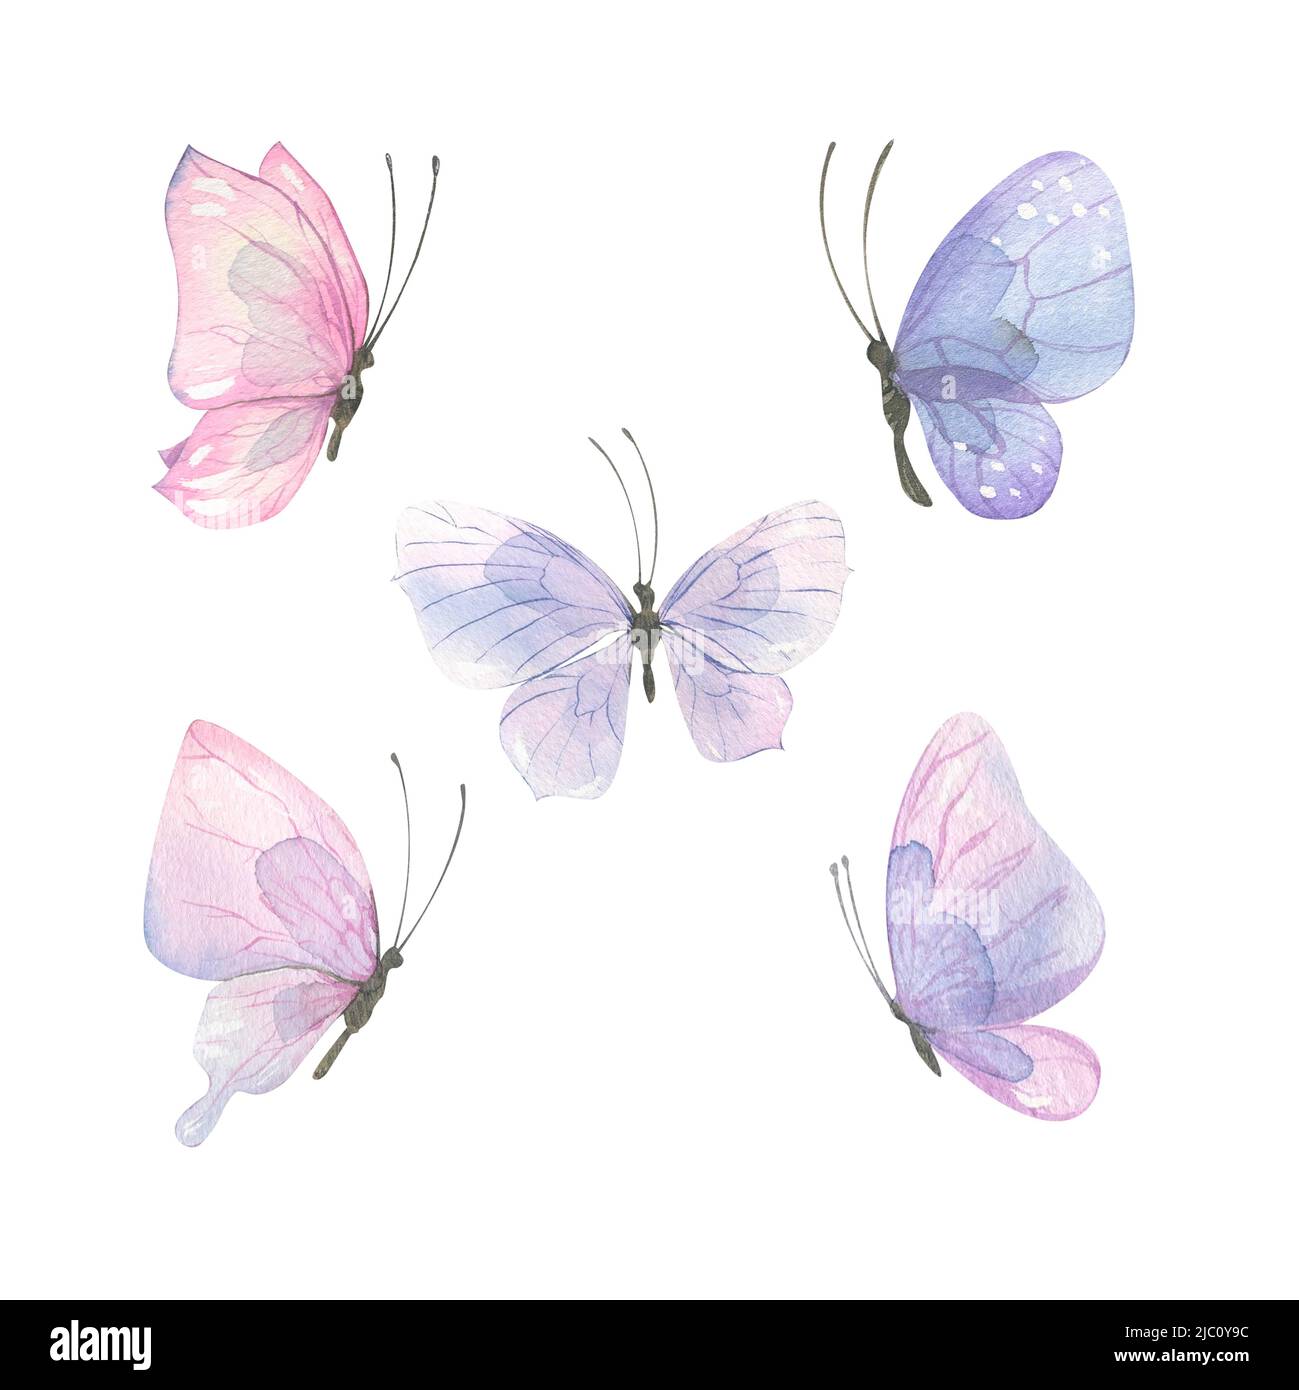 Aquarell-Illustration zartrosa-lila Schmetterlinge. Eine Reihe von verschiedenen Formen und Farben. Luftig, leicht, sanft. Für Bannerdesign, Postkarten, c Stockfoto